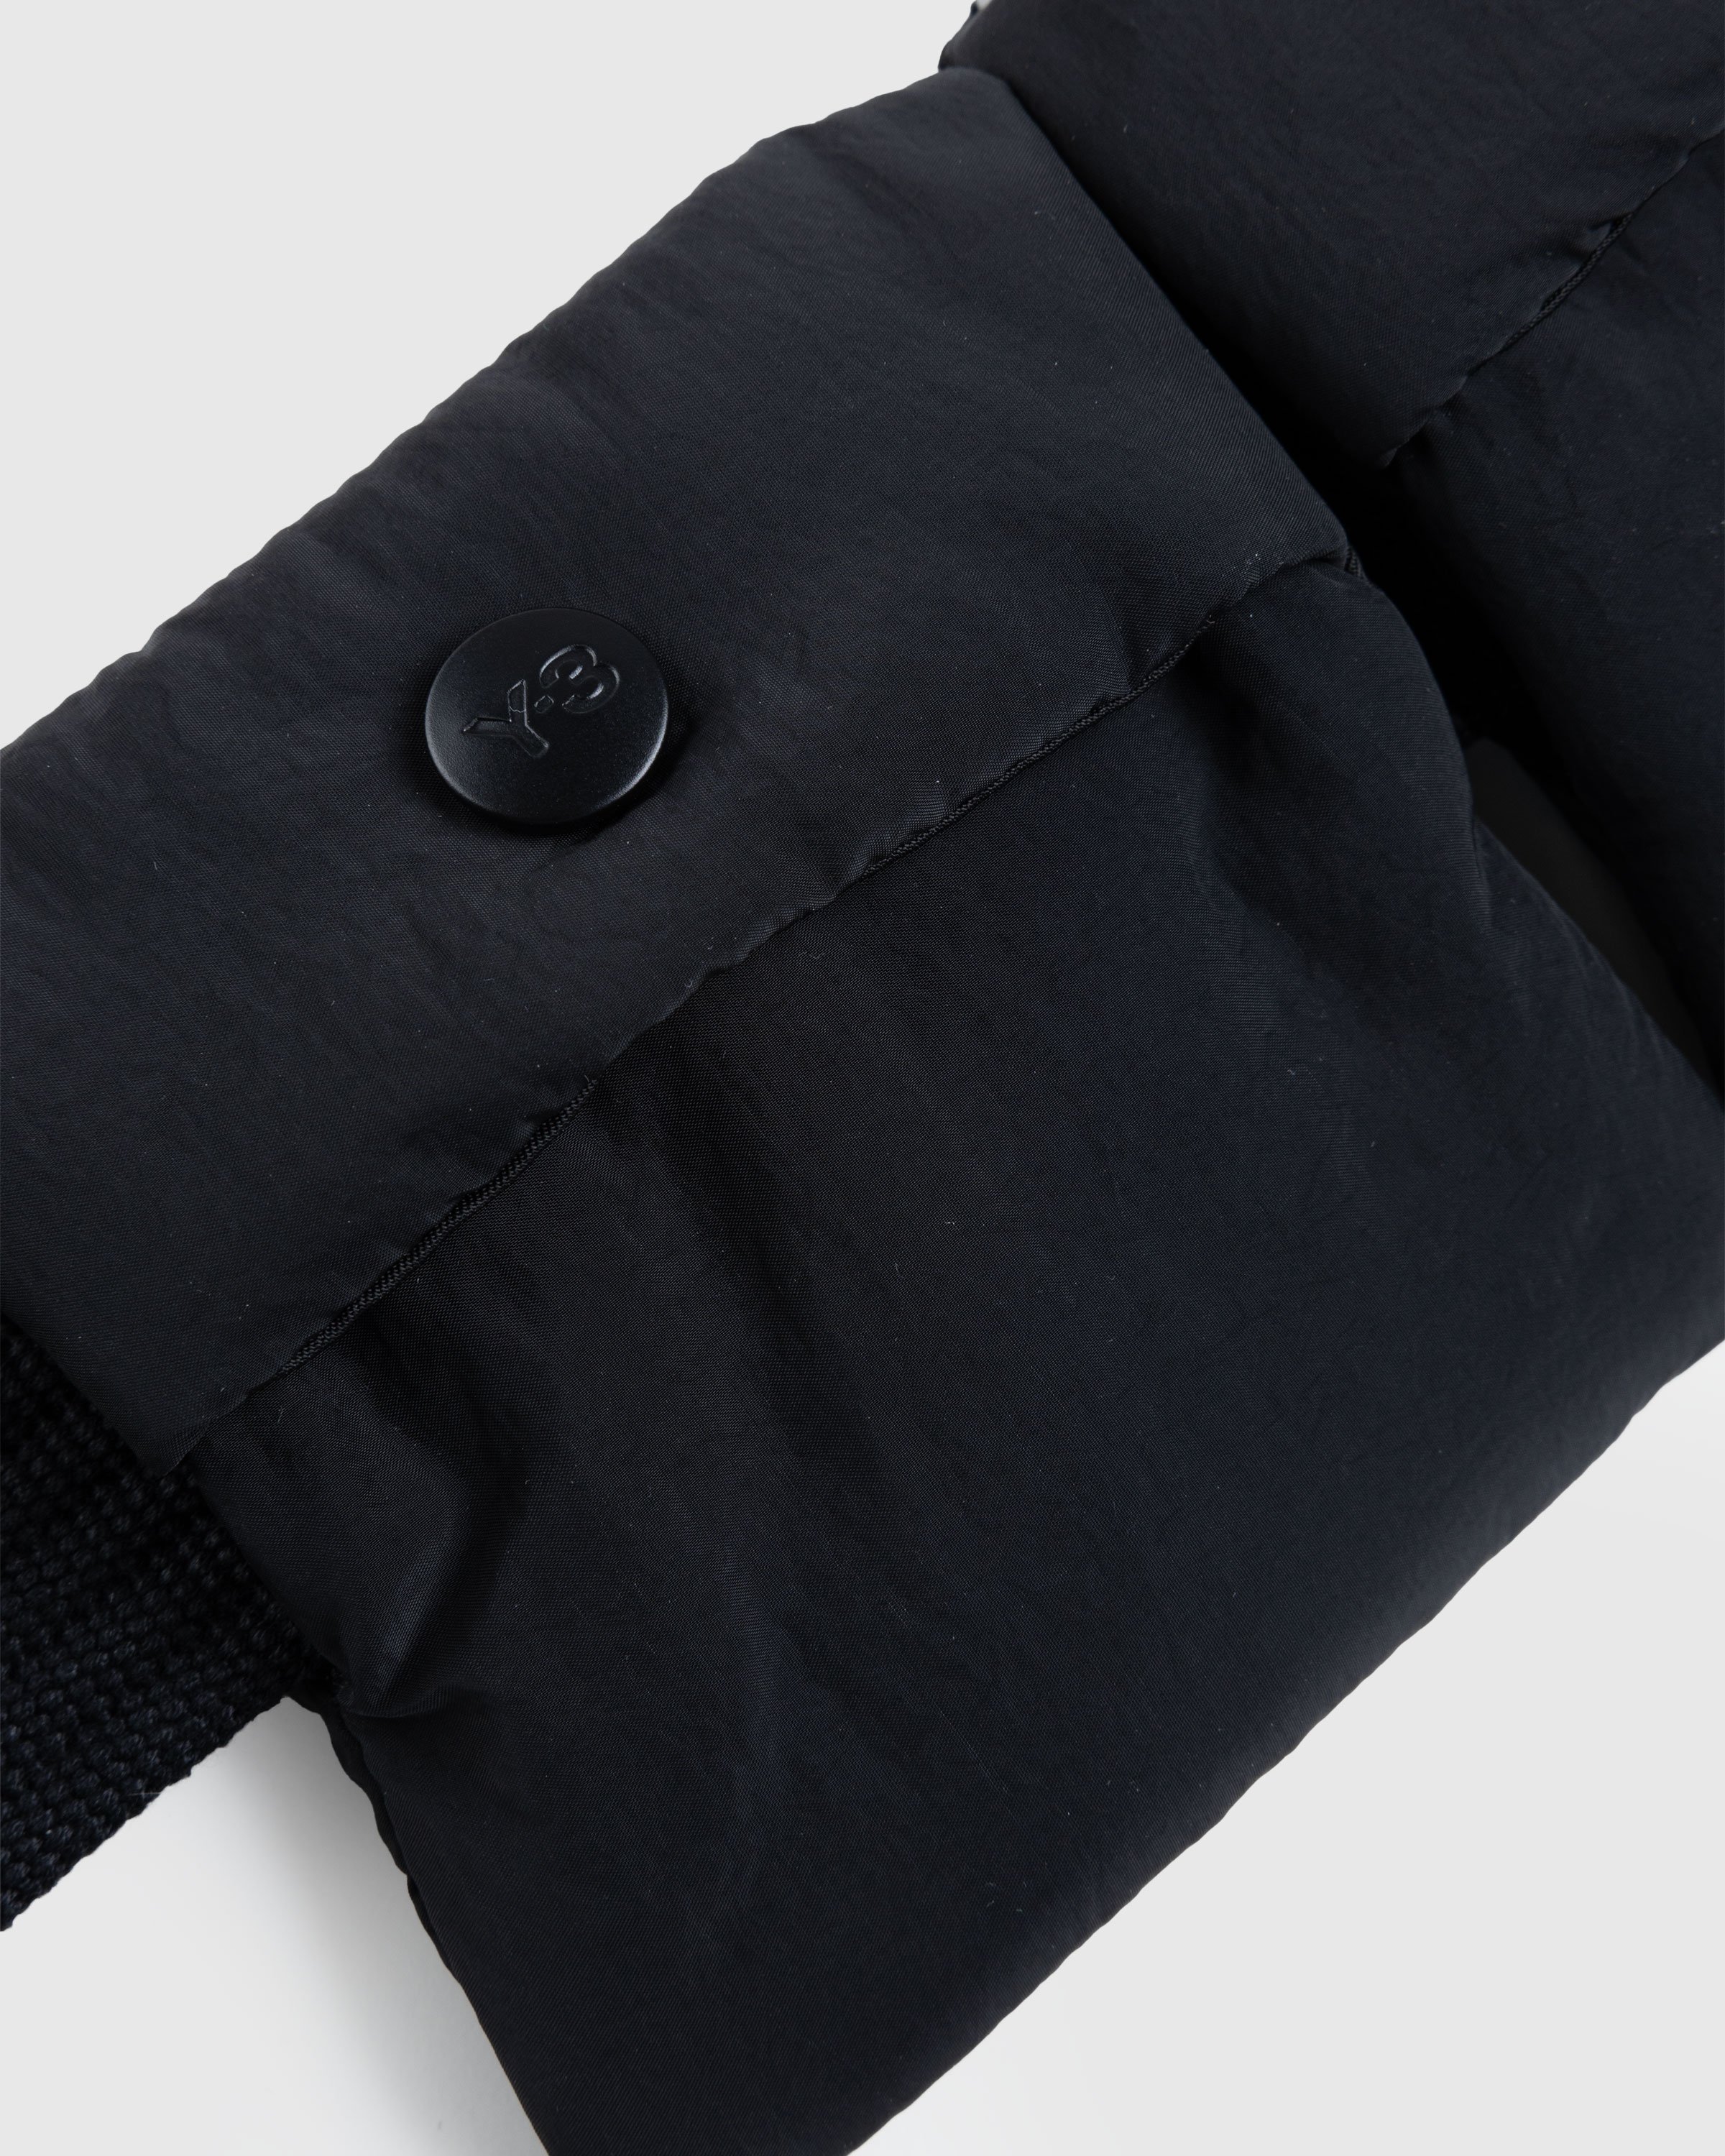 Y-3 - Crinkled Crossbody Bag Black - Accessories - Black - Image 5